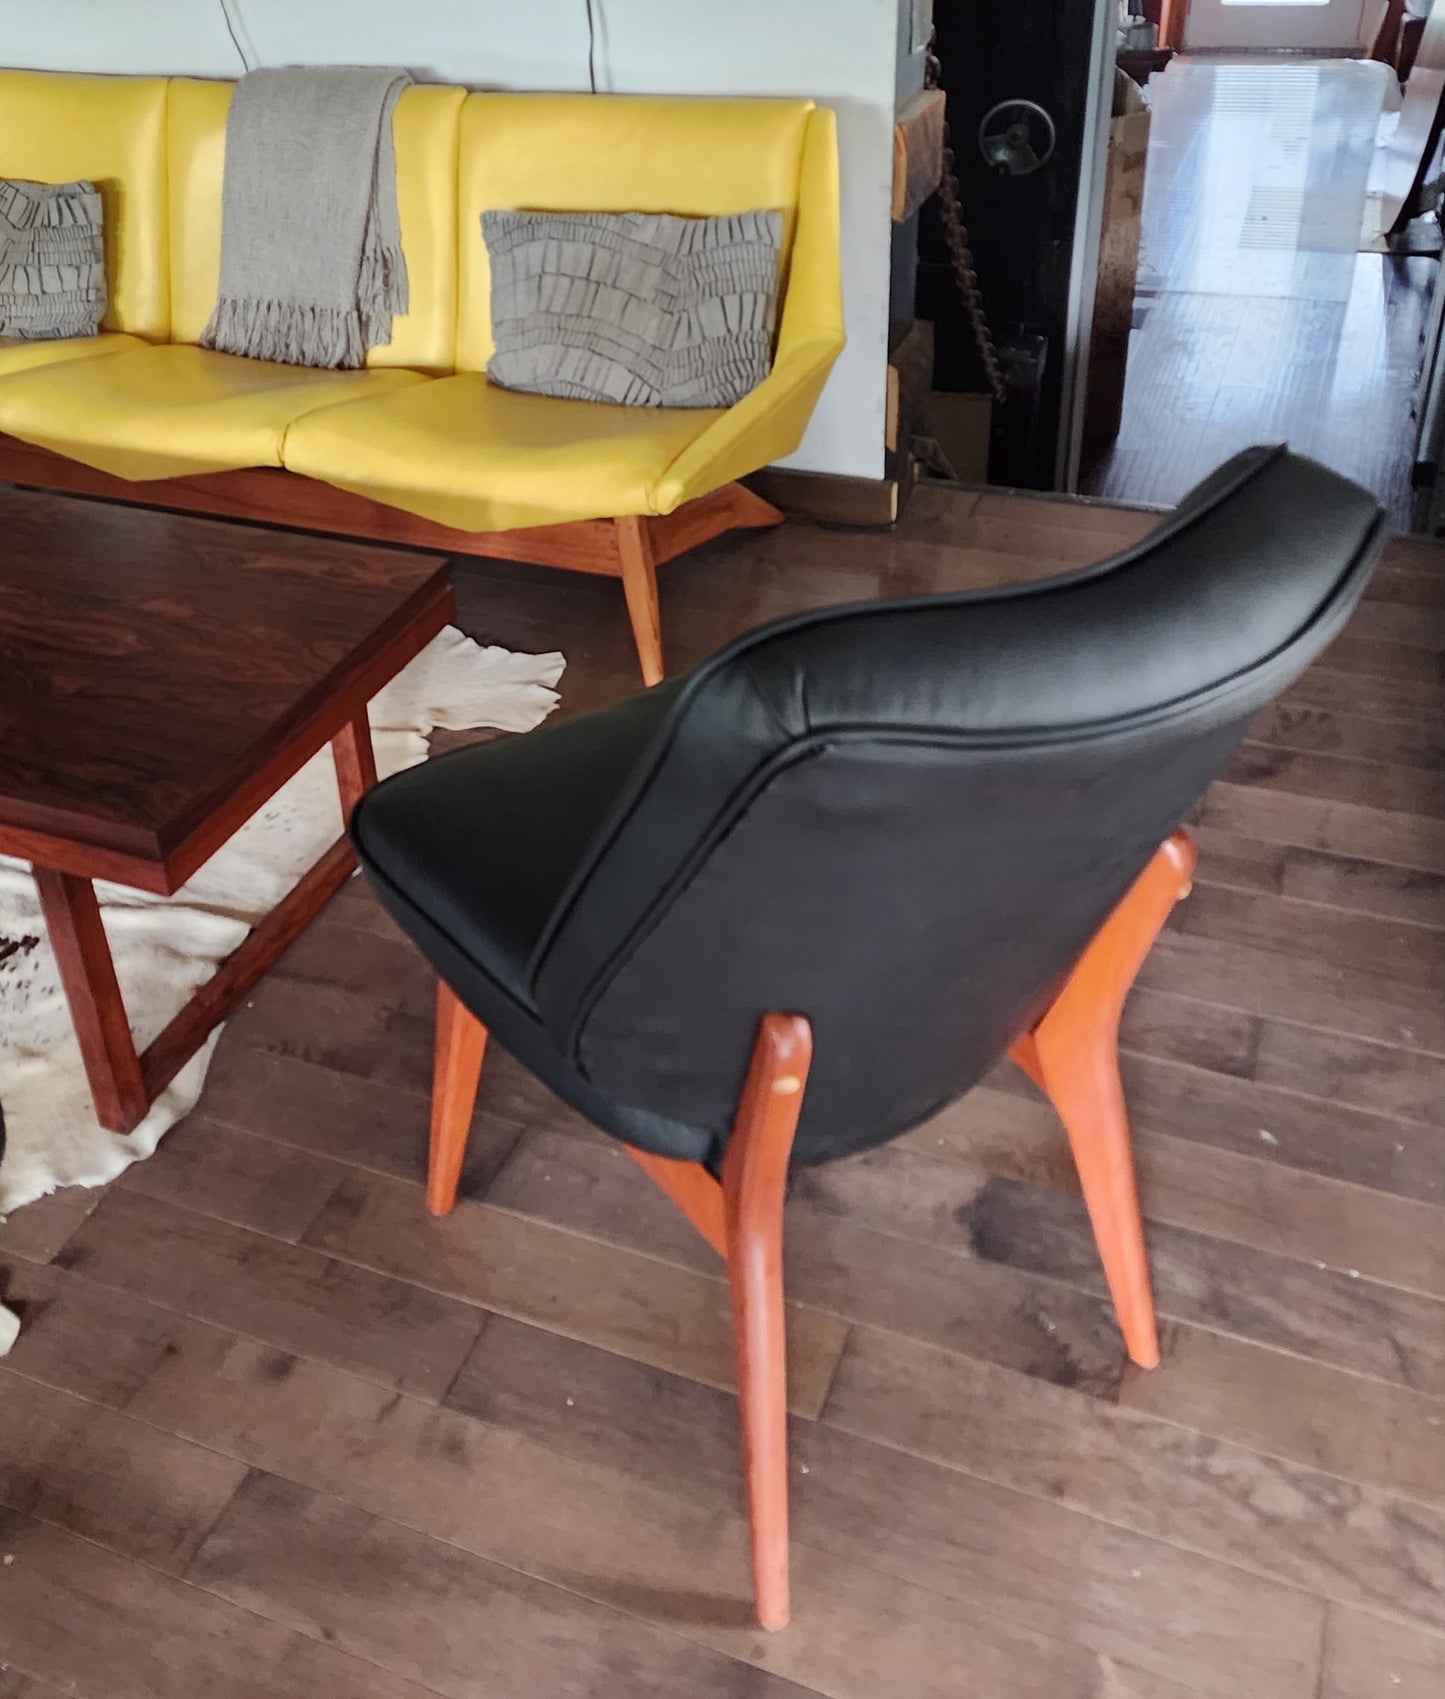 REFINISHED REUPHOLSTERED Danish Mid Century Modern Teak Framed Easy Chair